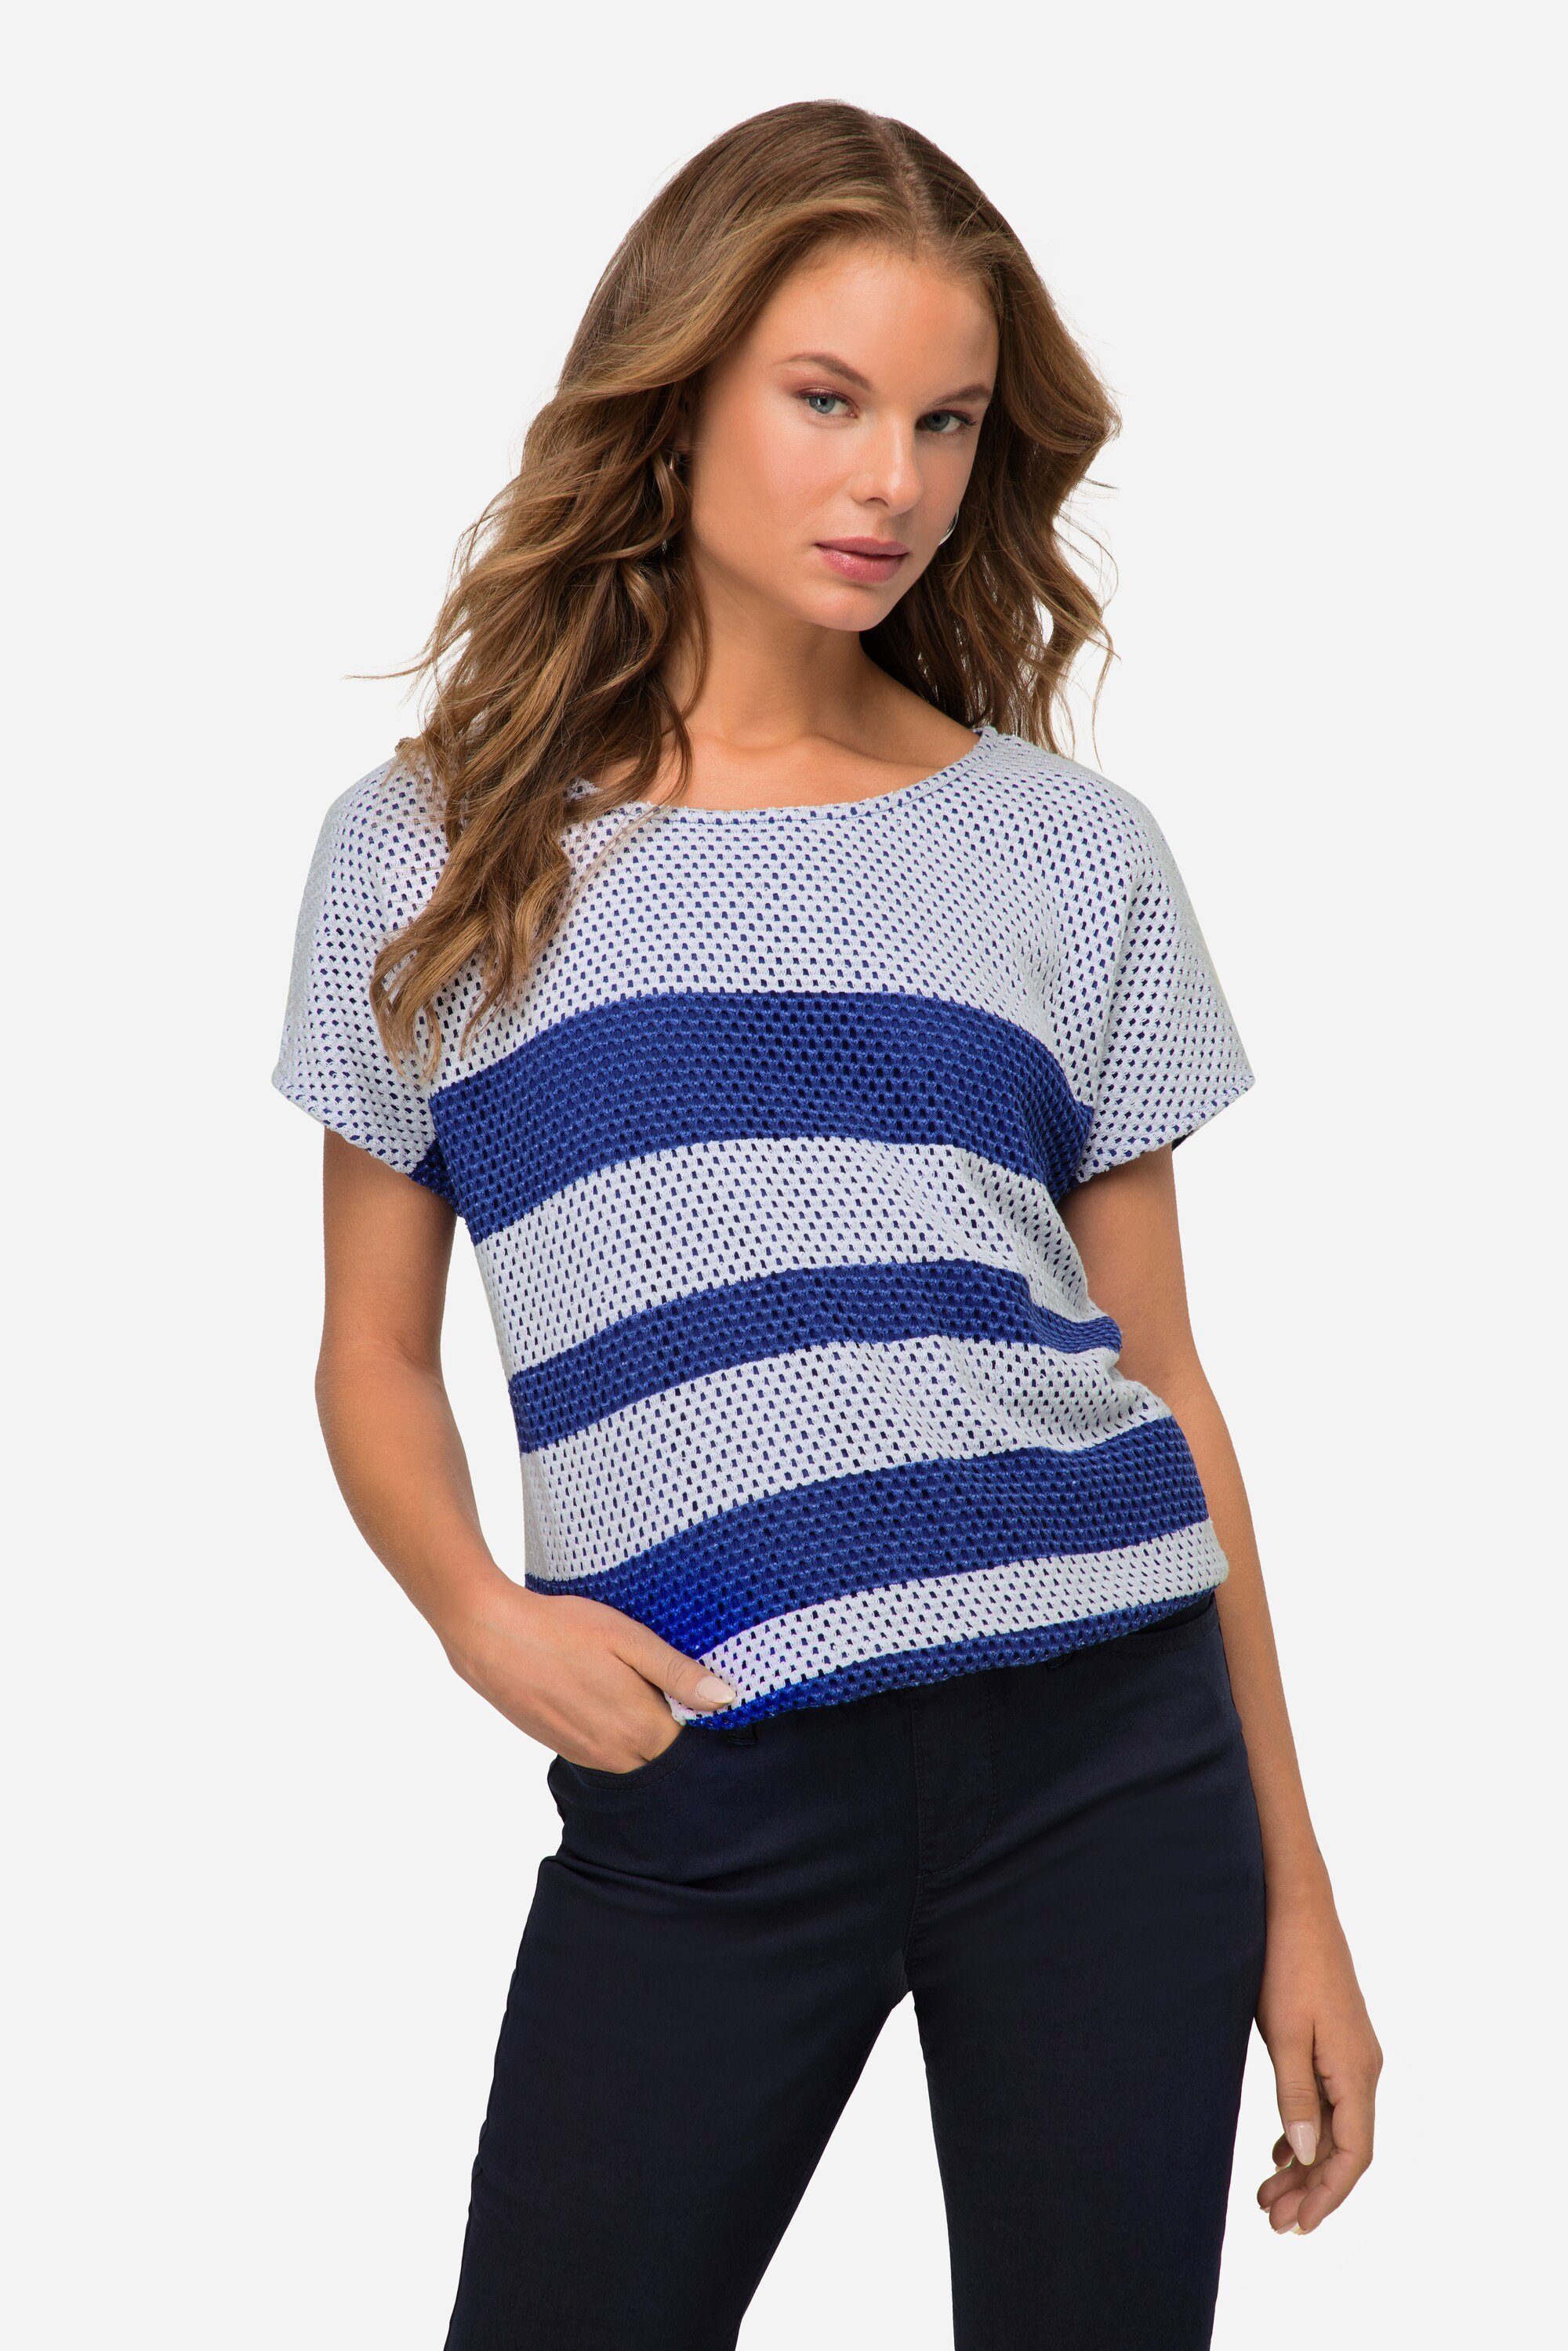 Laurasøn Sweatshirt Sweatshirt oversized doppellagig Streifen blauviolett